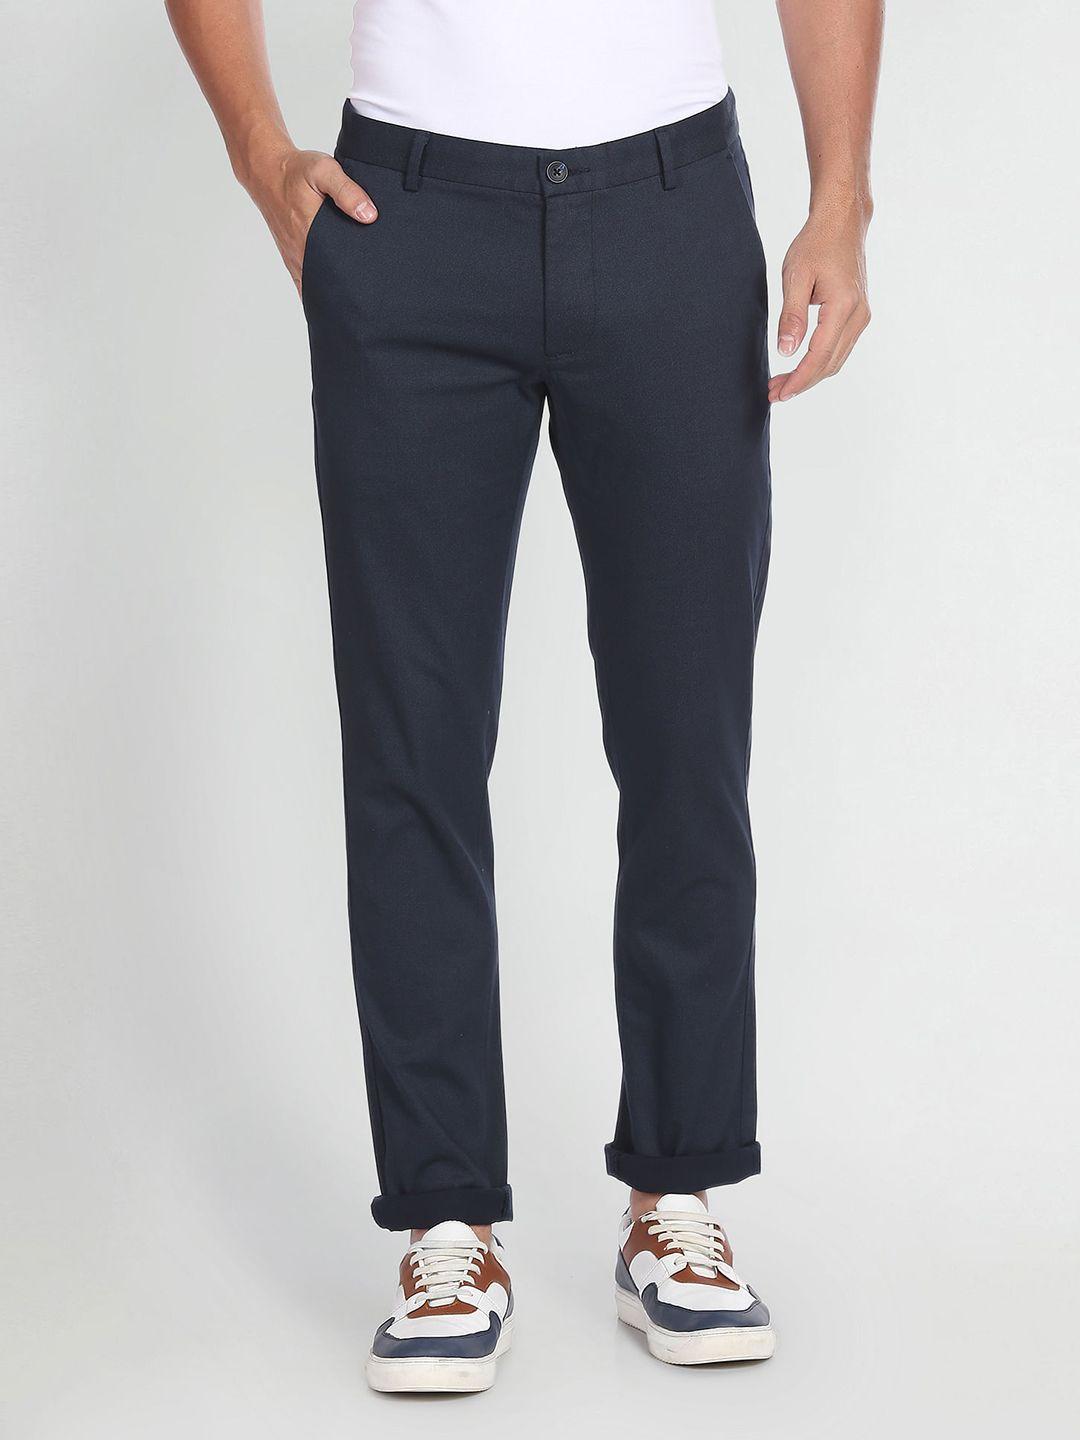 arrow sport men geometric printed original slim fit low-rise casual trousers